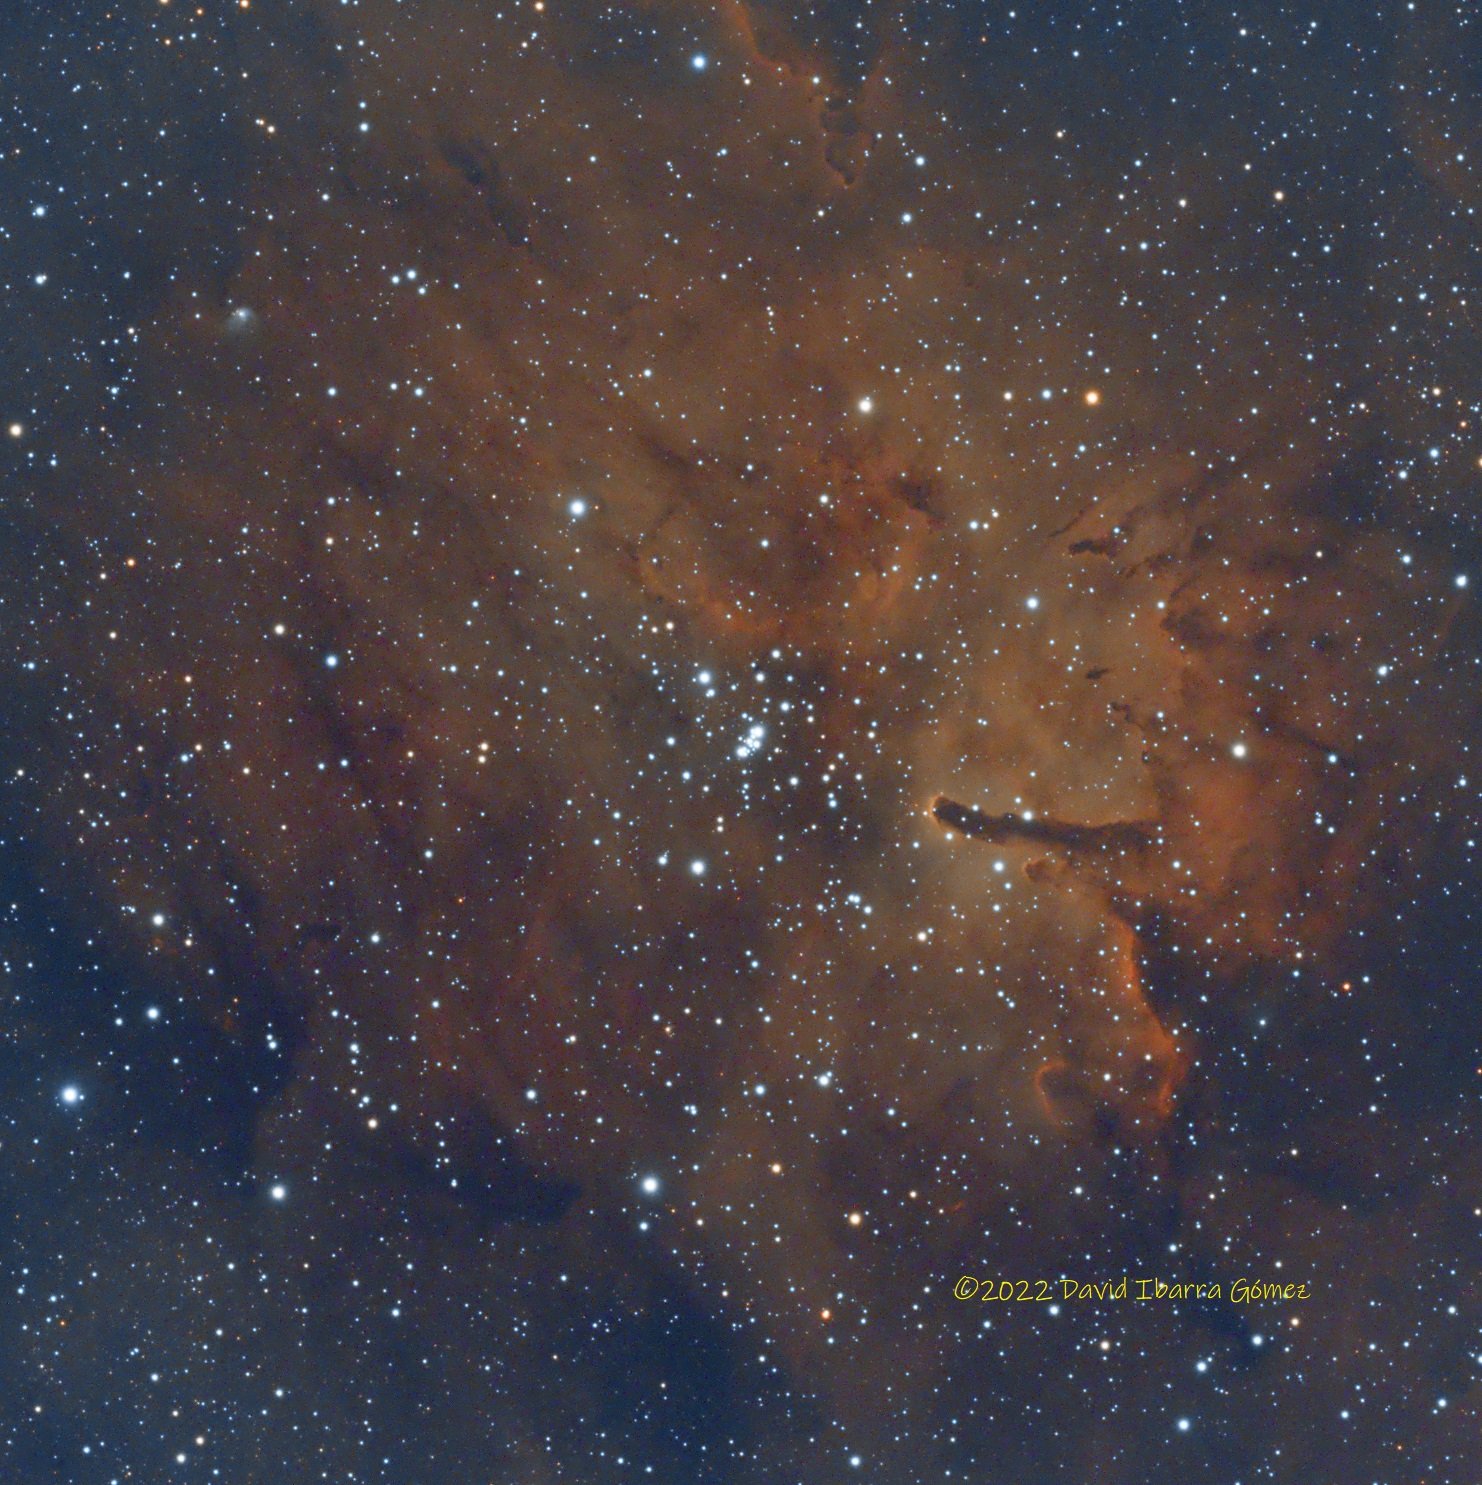 NGC6823 - David Ibarra